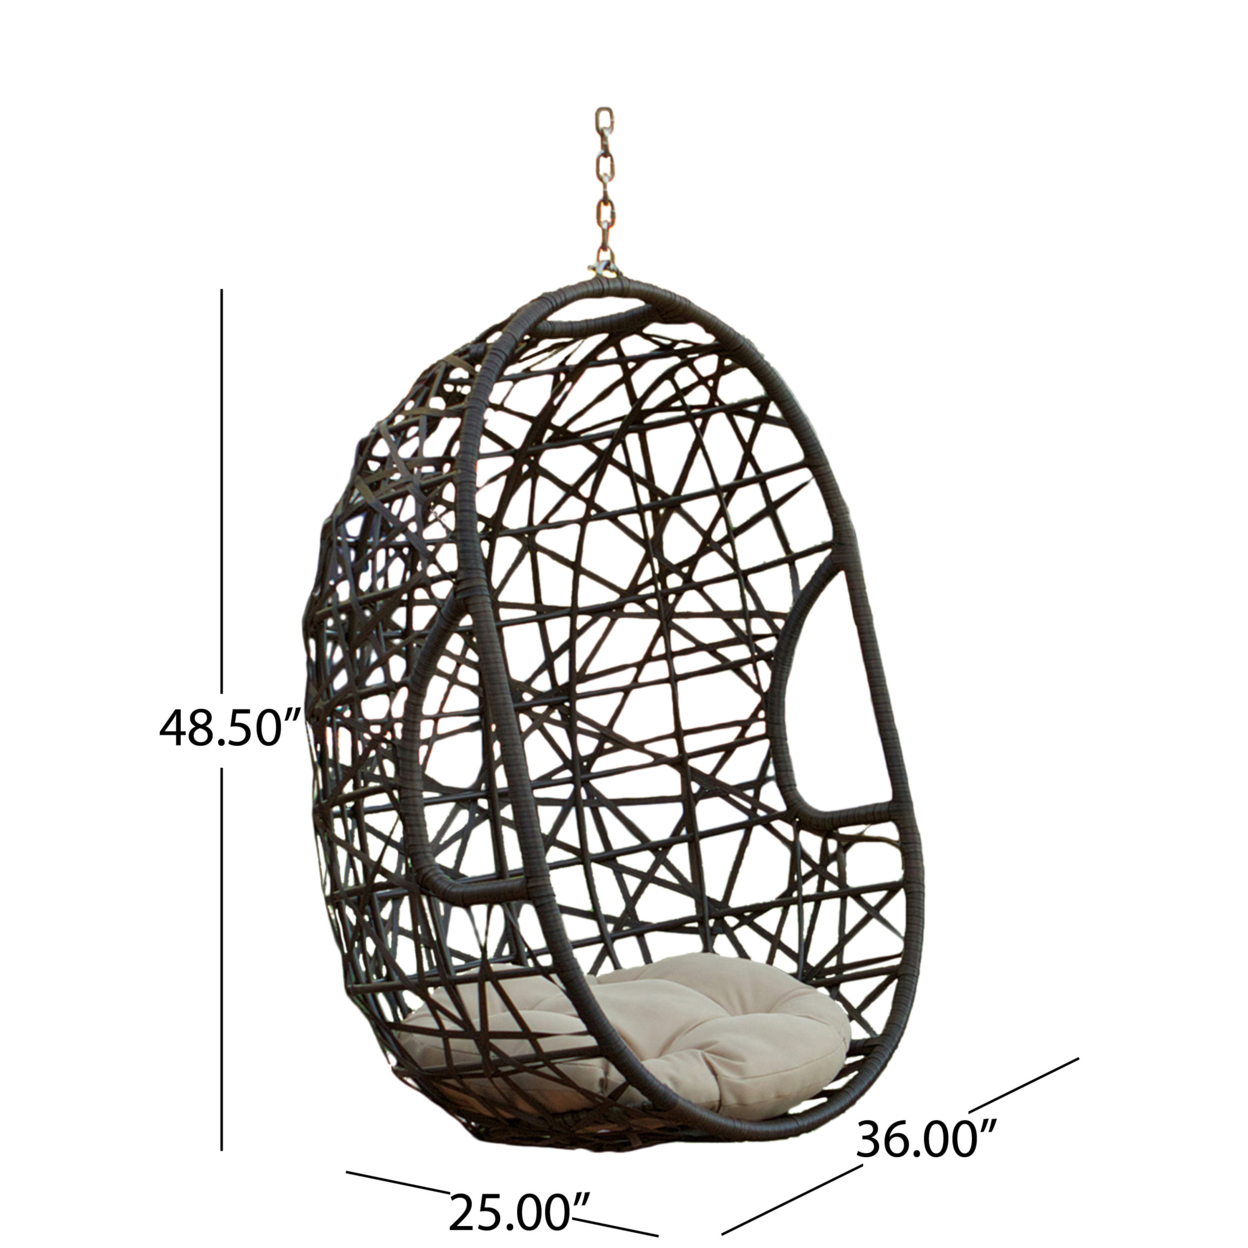 Trevyn Indoor/Outdoor Wicker Hanging Teardrop / Egg Chair (Stand Not Included)